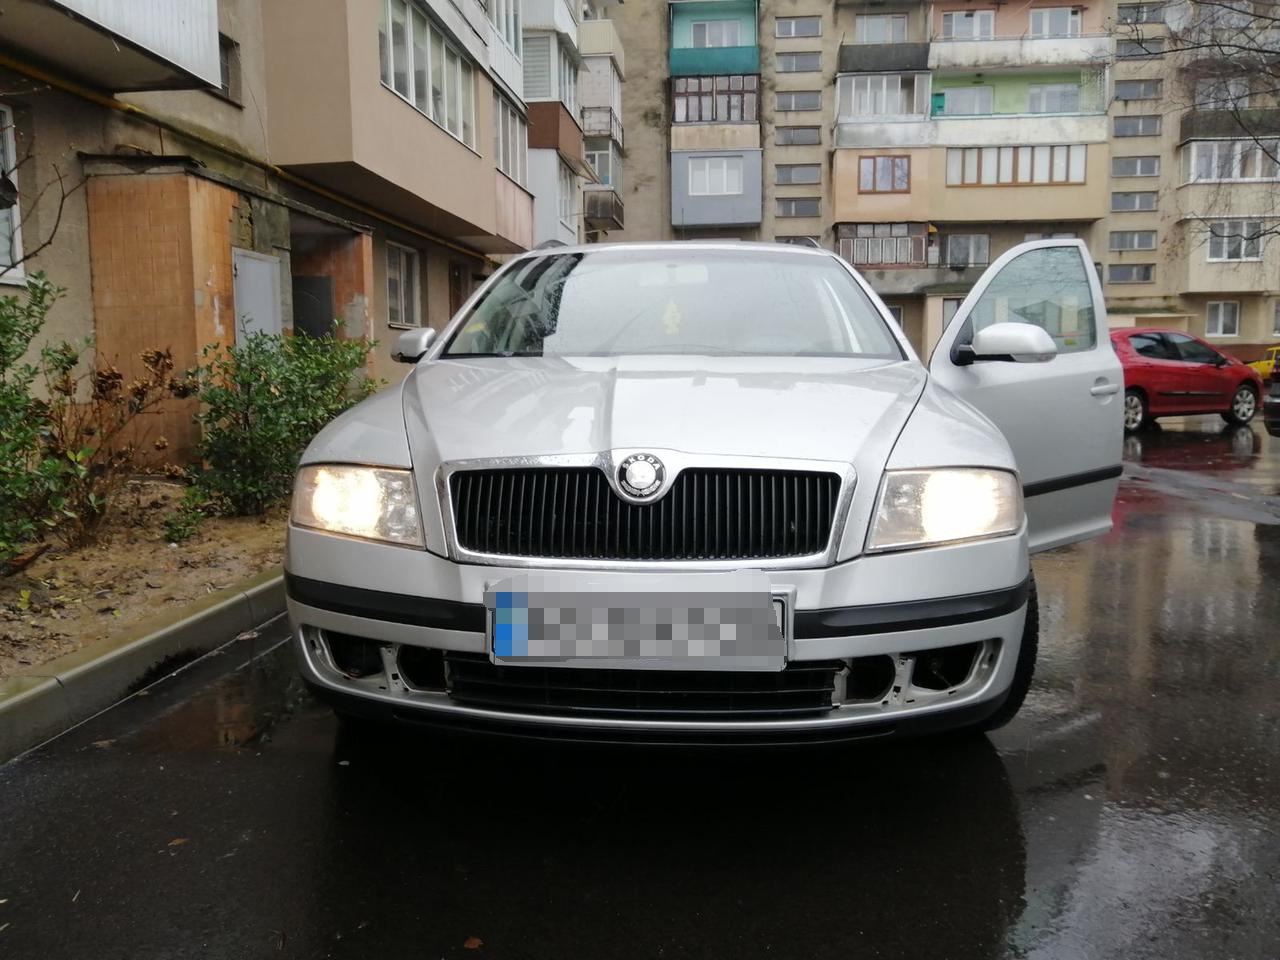 18-річний мешканець Мукачівщини знімав із чужих автівок фари і продавав їх через інтернет (ФОТО)